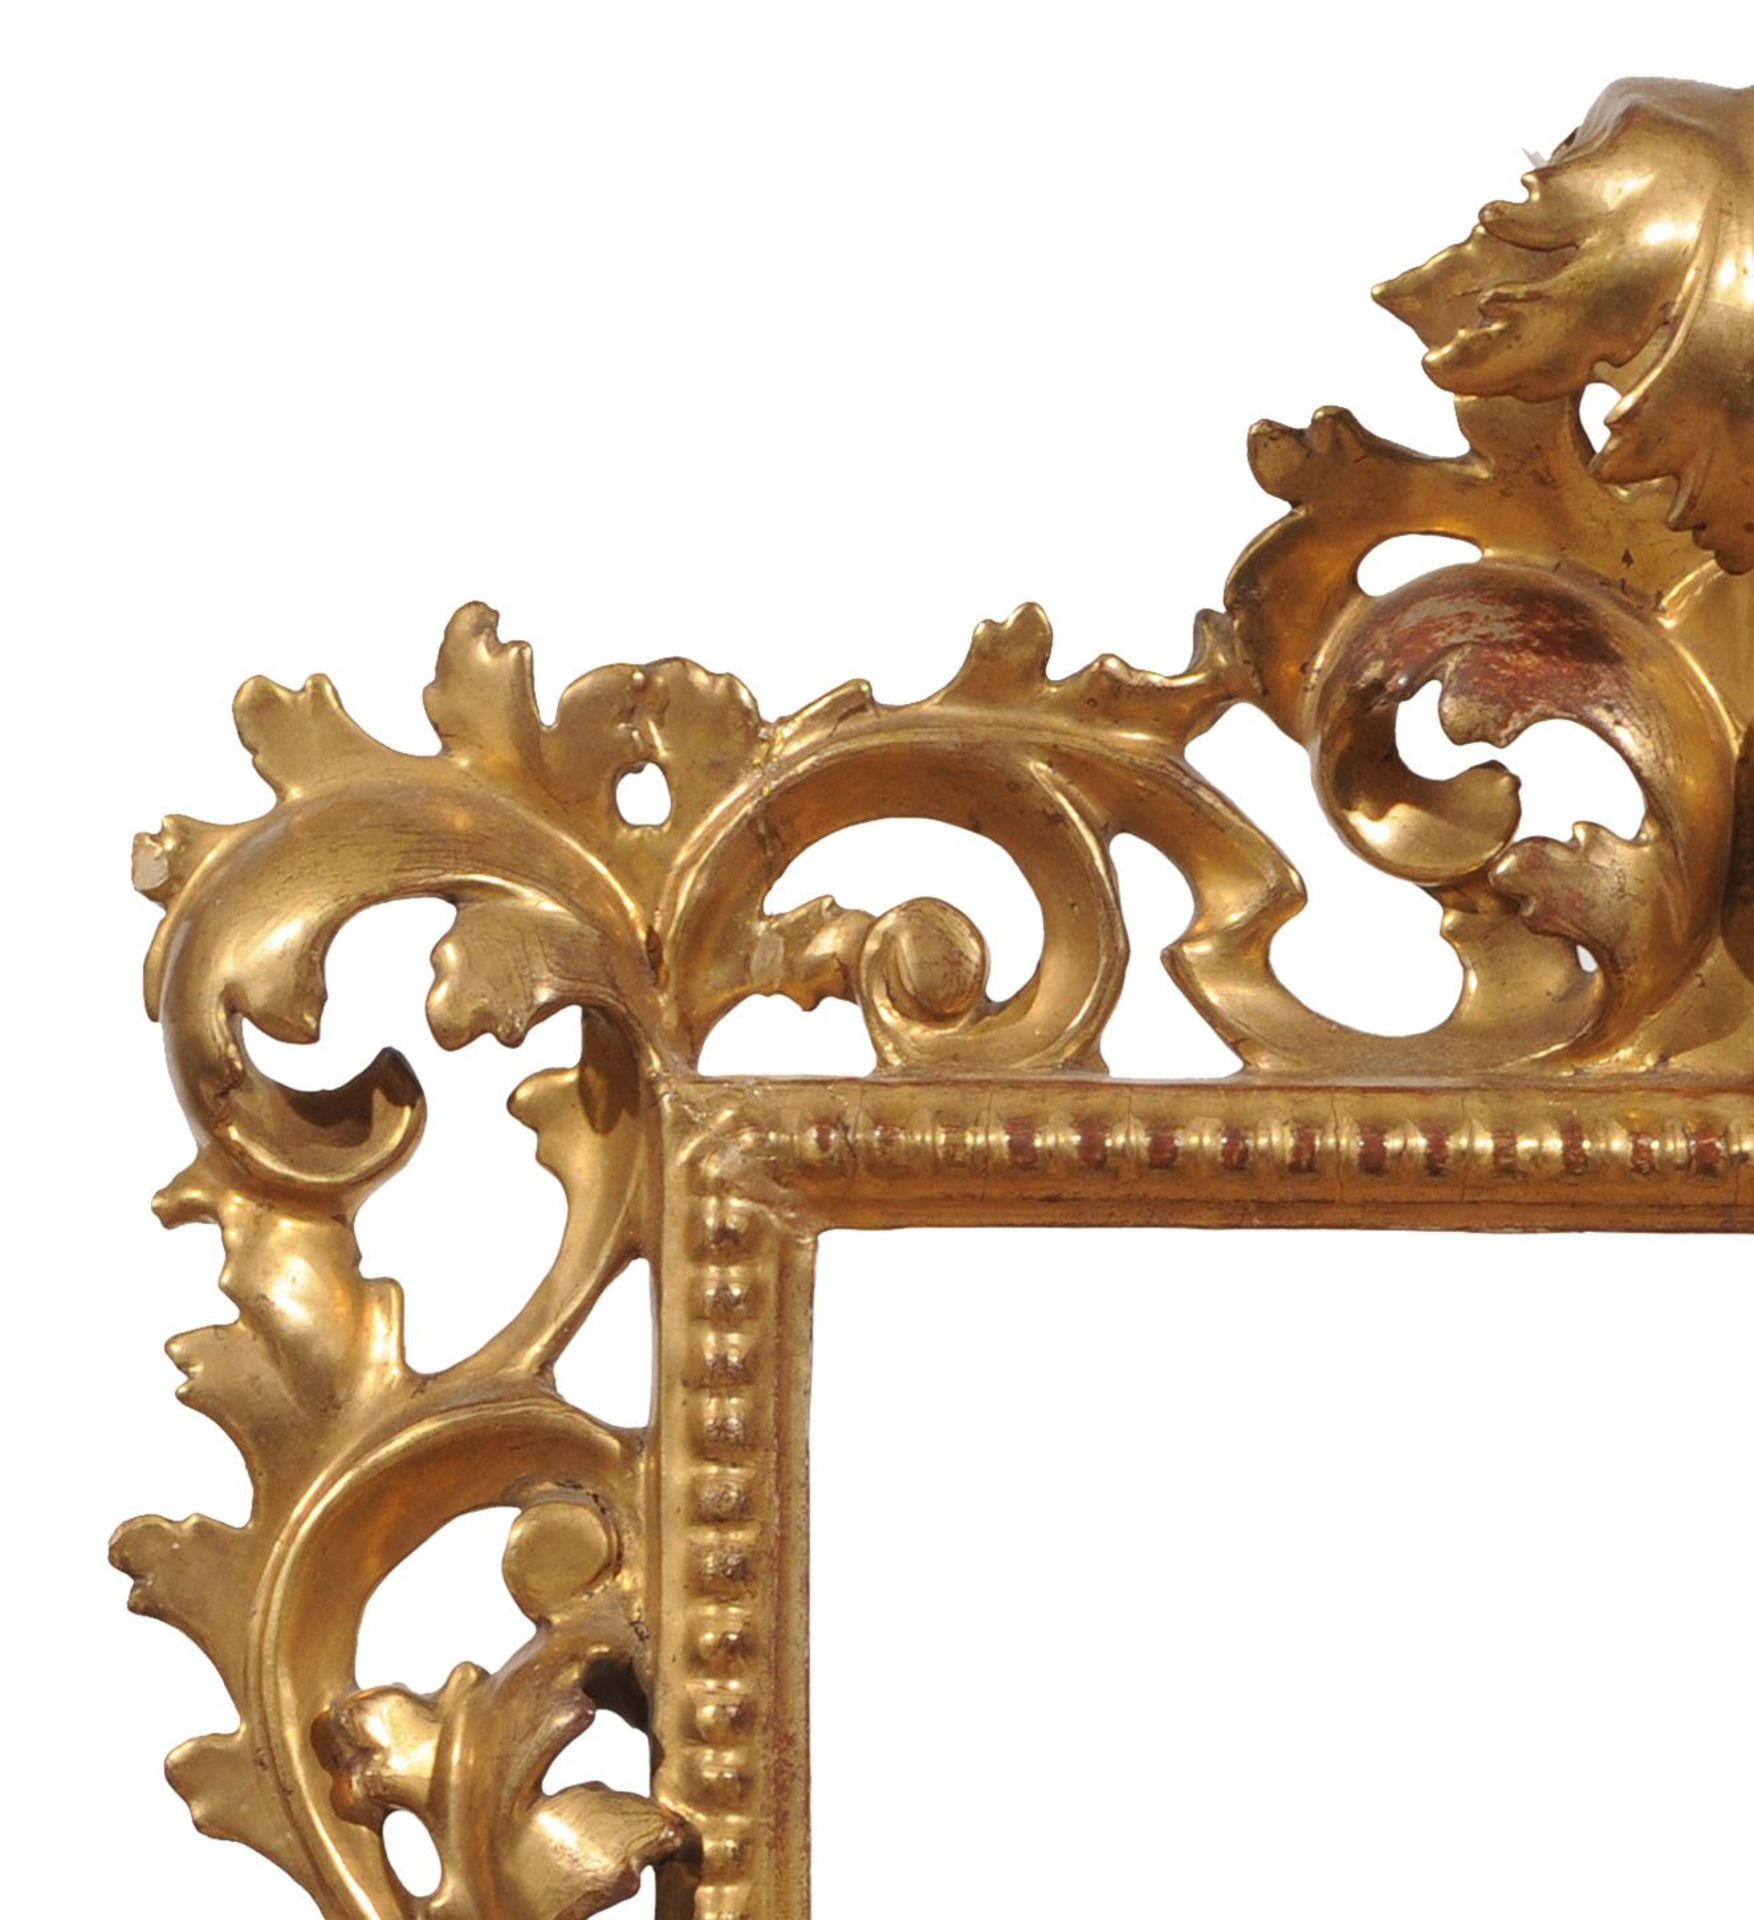 Blattrahmen im Florentiner Stil mit Aufbau aus einer Akanthusblattranke. Wohl 19. Jh. Holz, - Bild 2 aus 2